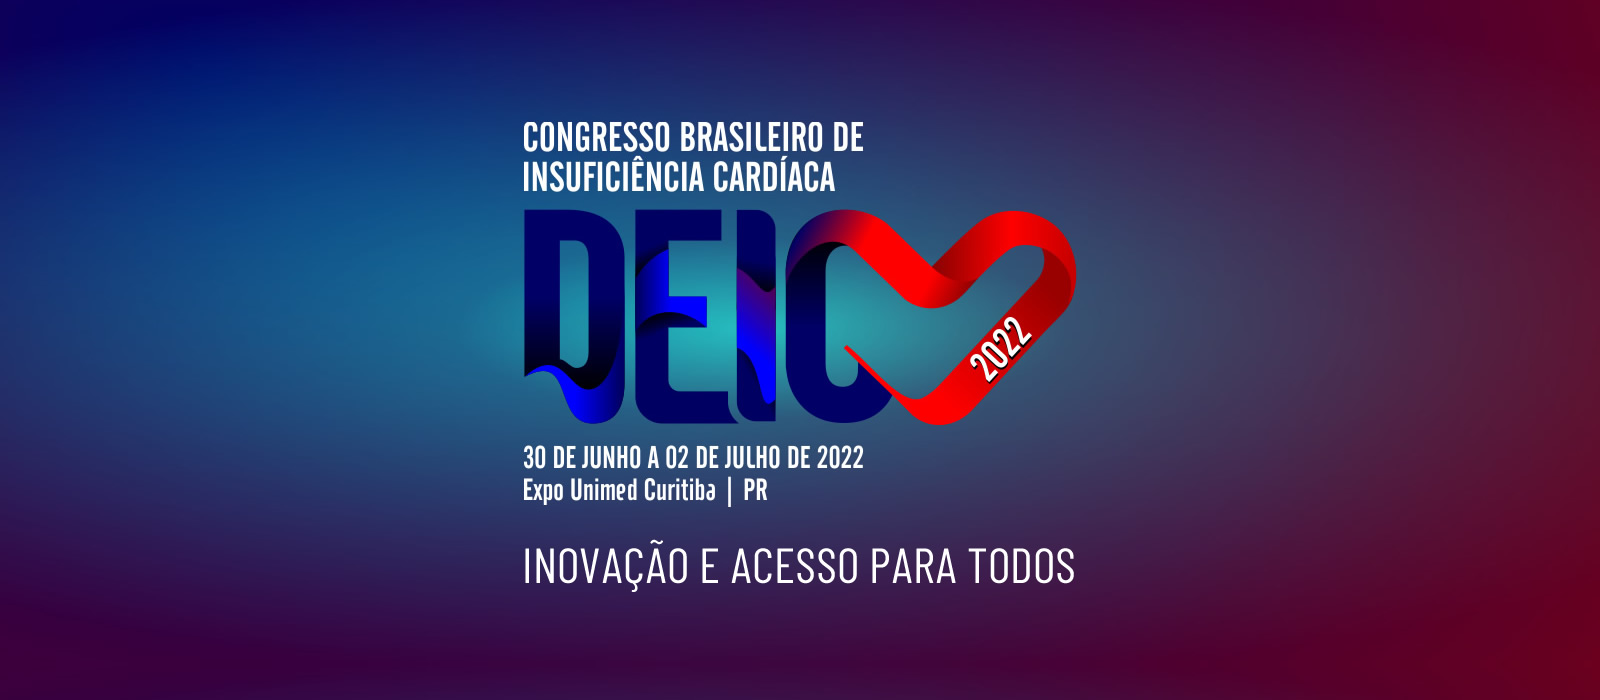 Curitiba é sede do Congresso Brasileiro de Insuficiência Cardíaca, que também ocorre em formato digital